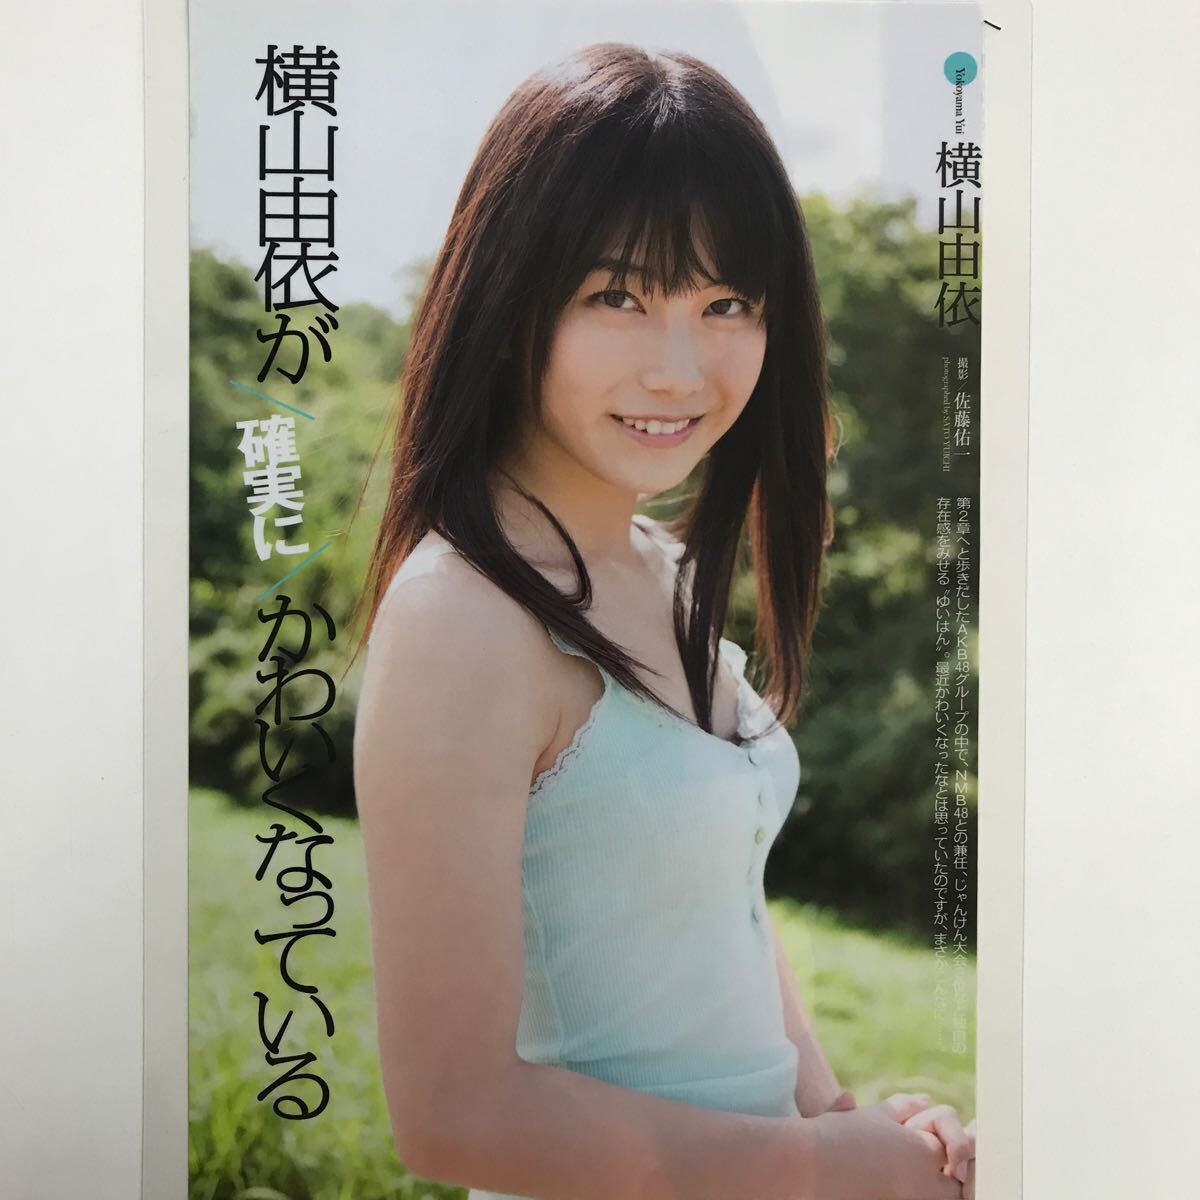 ka-078[ журнал gravure ламинирование обработка ] Yokoyama Yui (AKB48.NMB48... делать присутствие выдающийся идол )B5 3 листов 6P Play Boy 2012 год 11 месяц 19 день номер *15